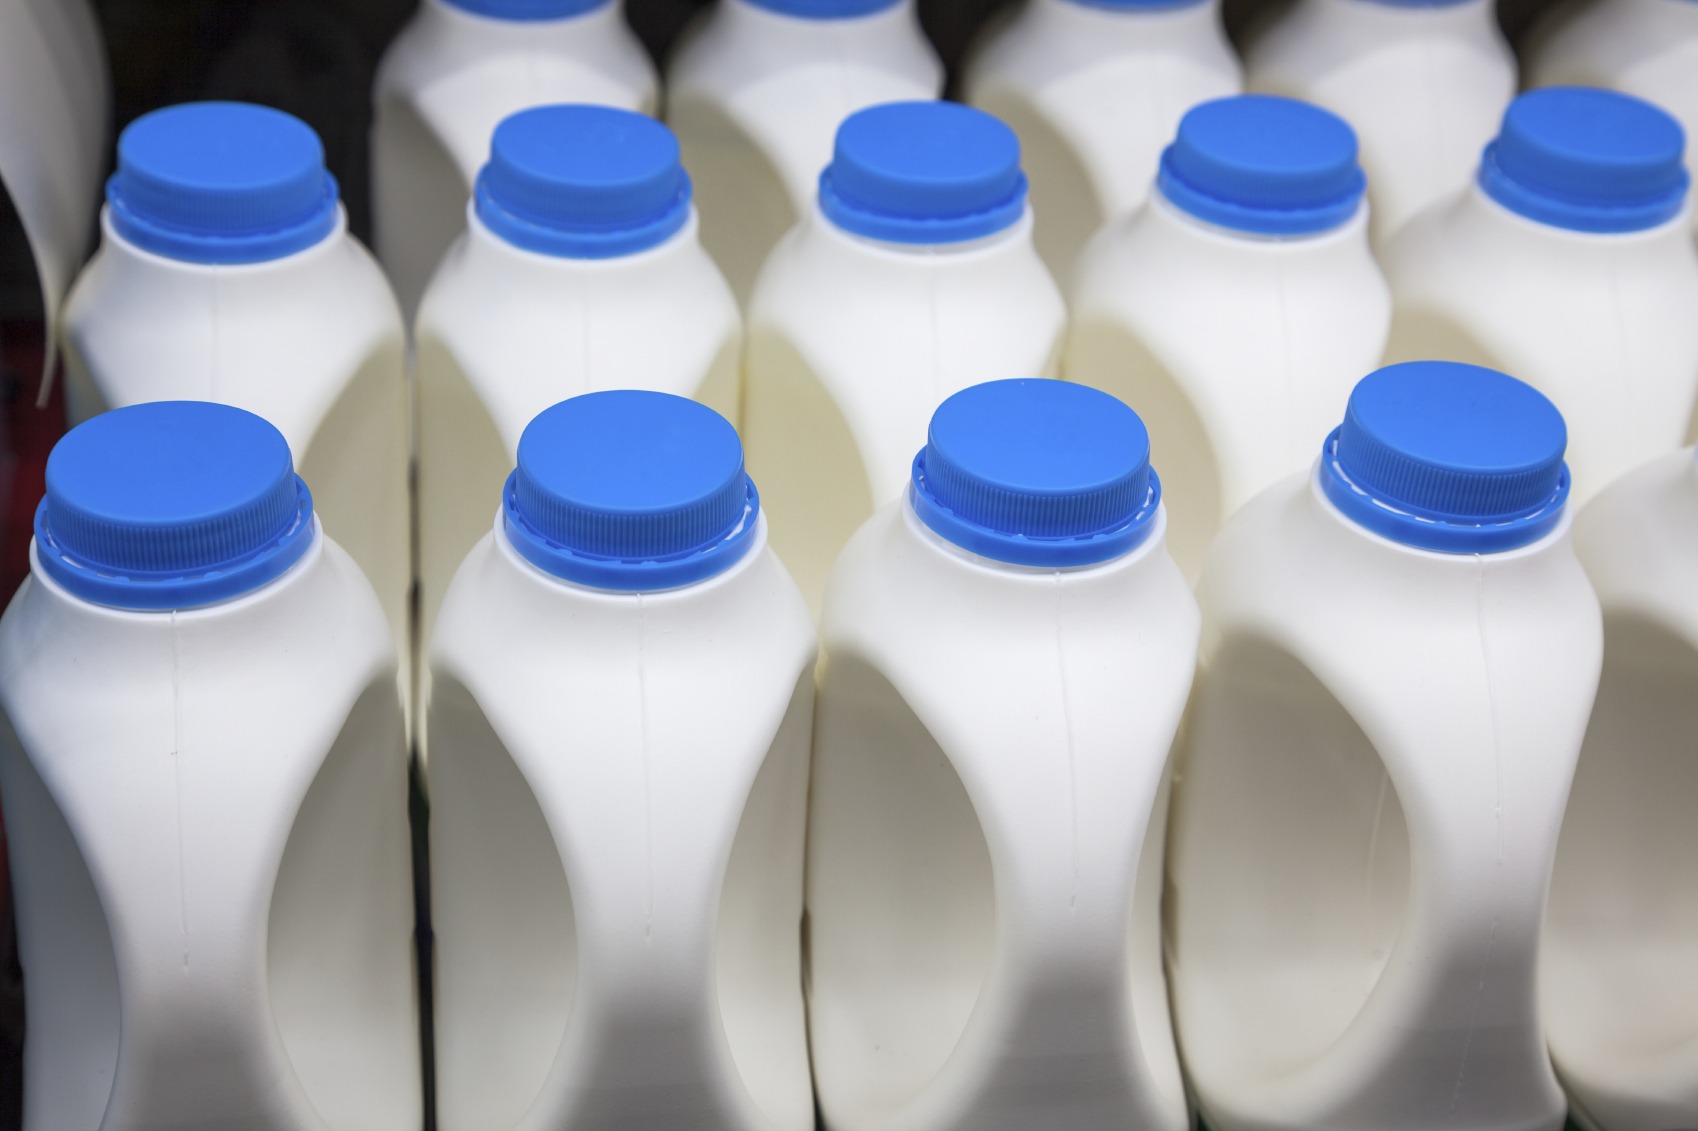 milk consumption